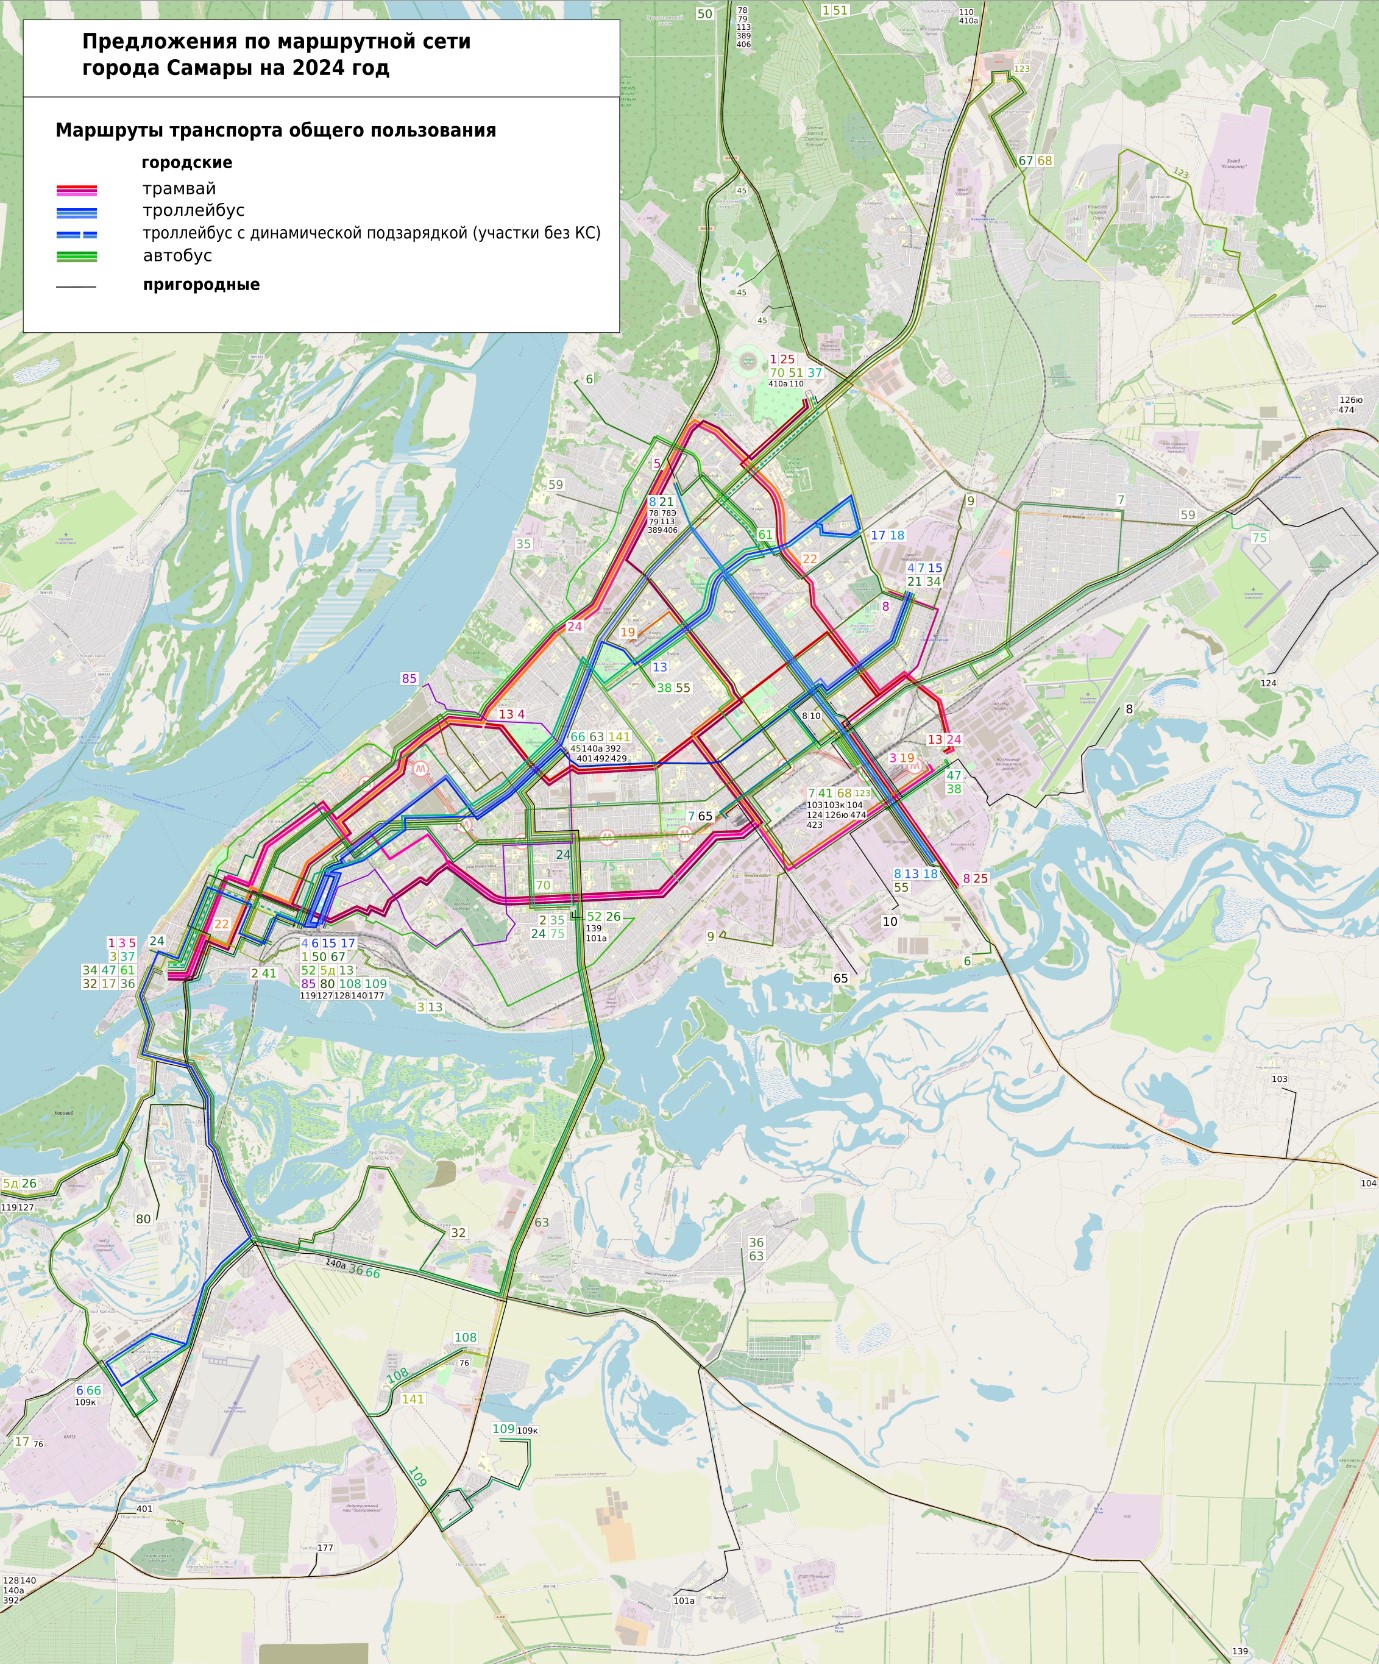 Предложения по маршрутной сети Самары на 2024 год